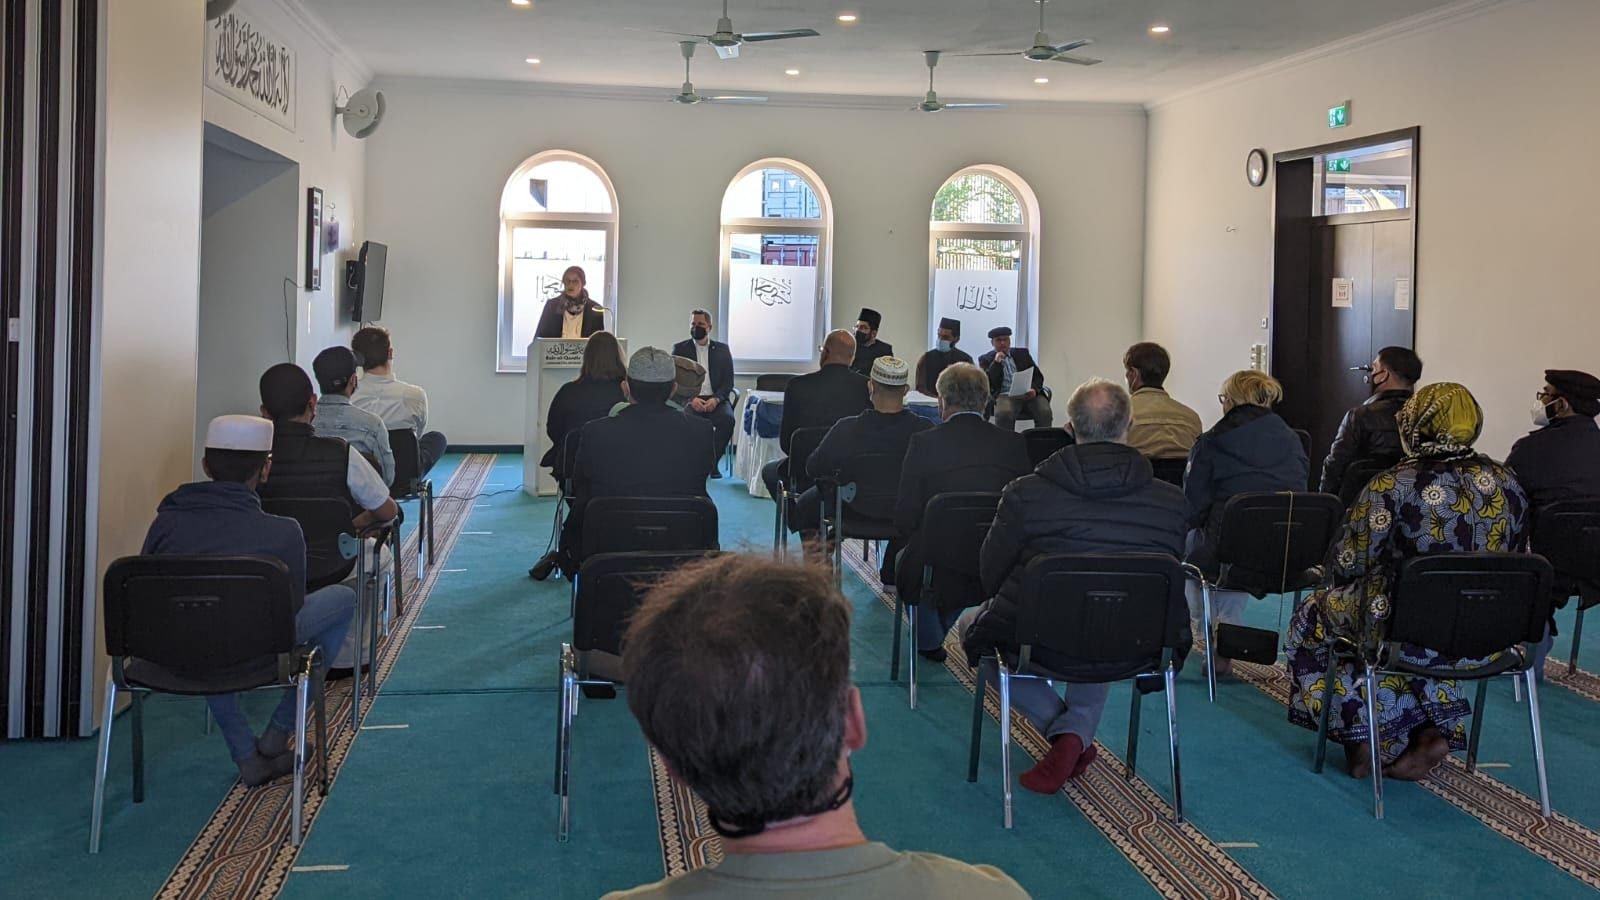 Abendlicher Empfang in der Bait-ul-Qaadir-Moschee in Vechta: Die Vertreter der muslimischen Gemeinde nutzten das Fastenbrechen, um über ihre Arbeit auf lokaler und nationaler Ebene zu berichten sowie den Austausch mit den Gästen zu suchen. Foto: Ahmadiyya-Gemeinde